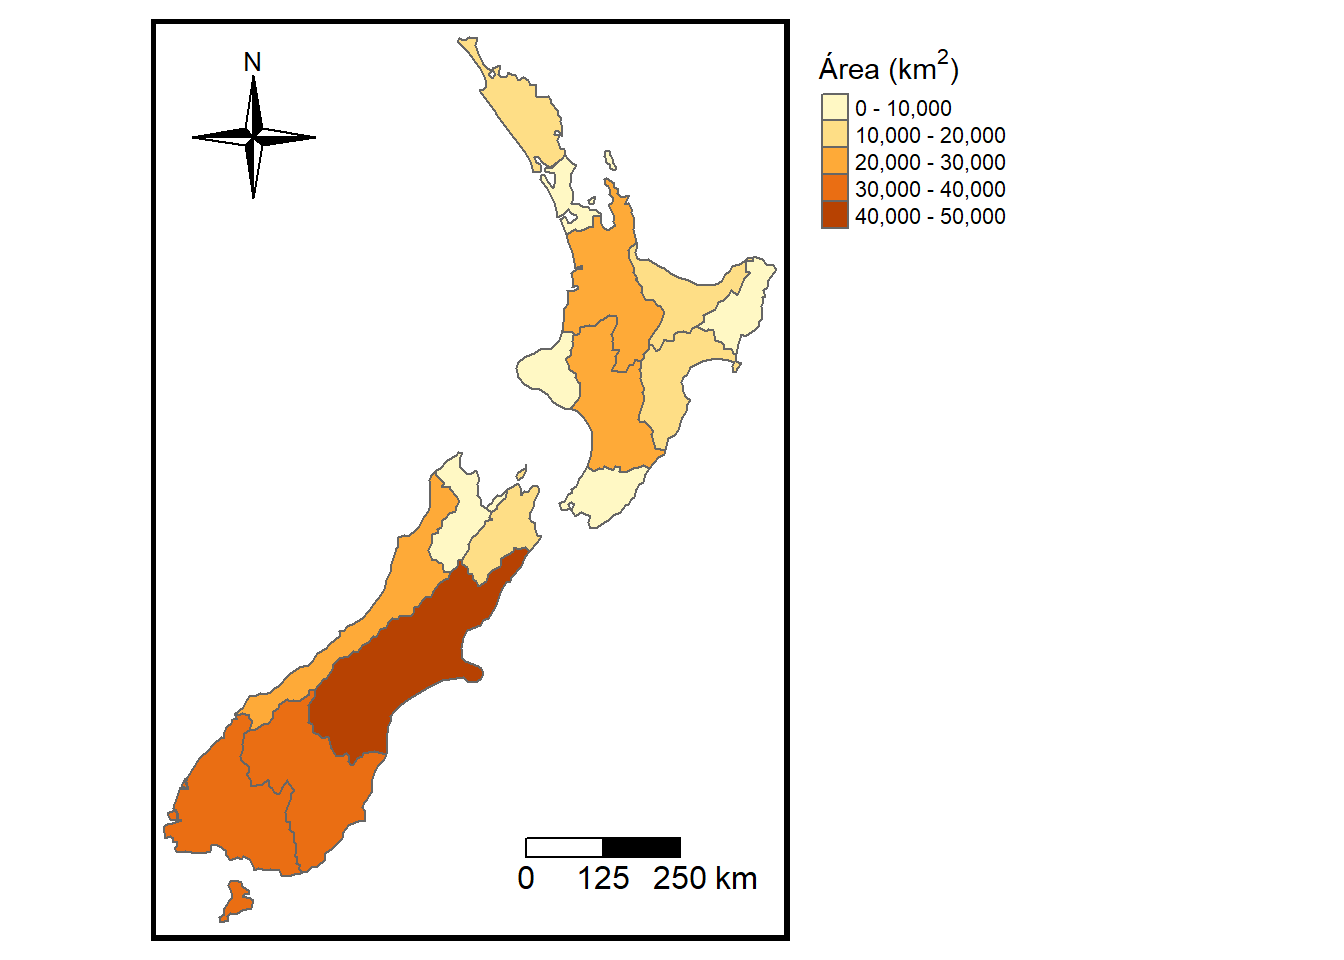 Mapa de Nueva Zelanda. Coloreado según área.